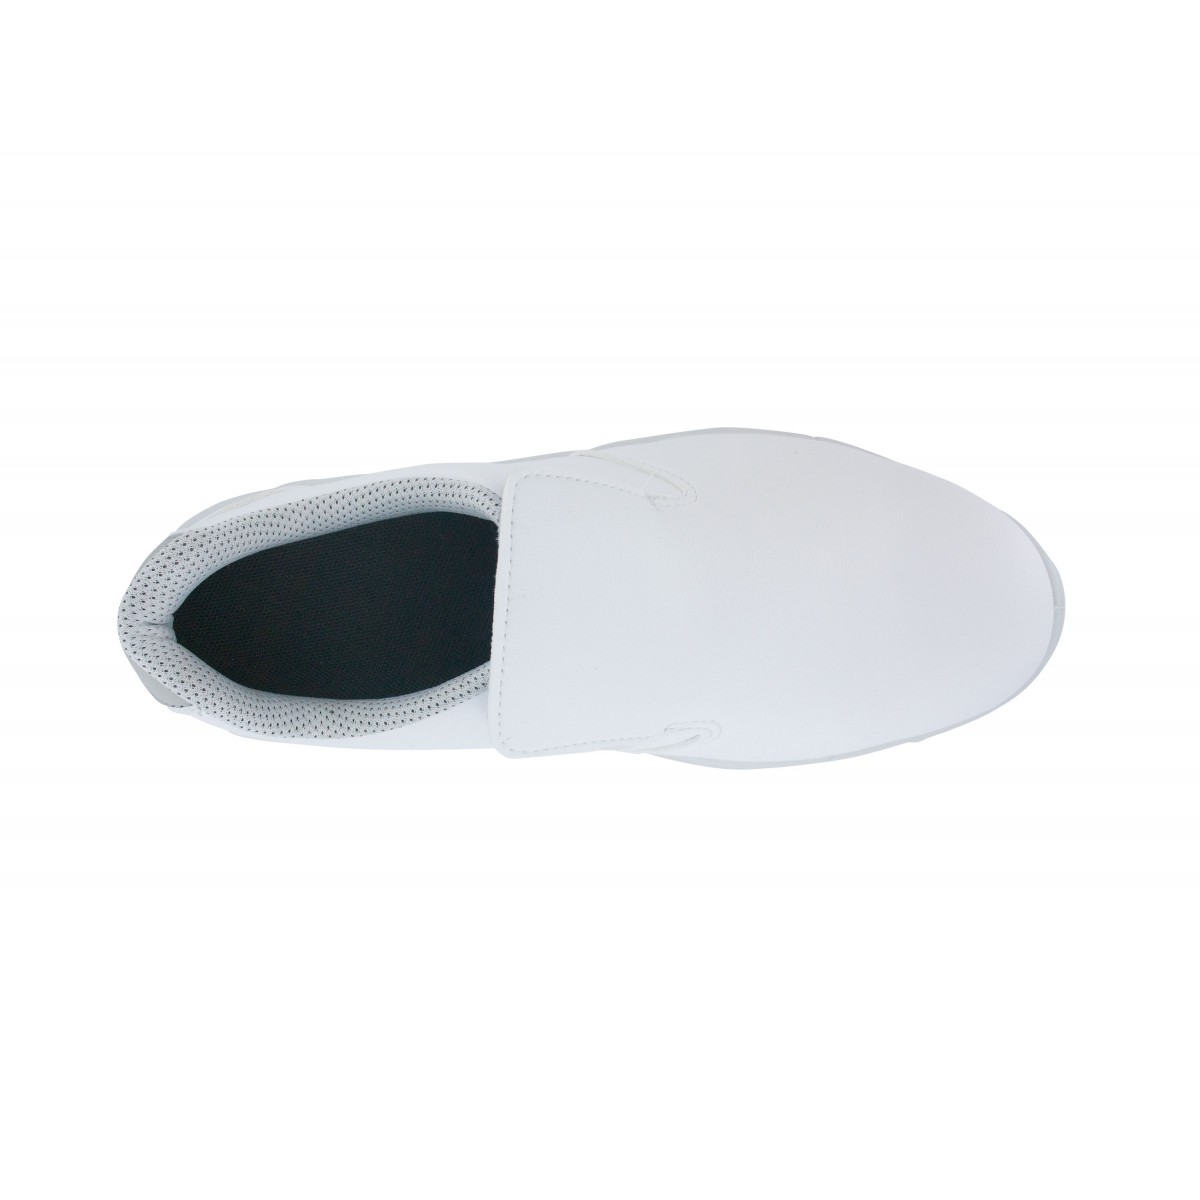 Chaussures de sécurité cuisine semelle REFLEX intégrée noir ou blanc, Brice Plus S2 SRC